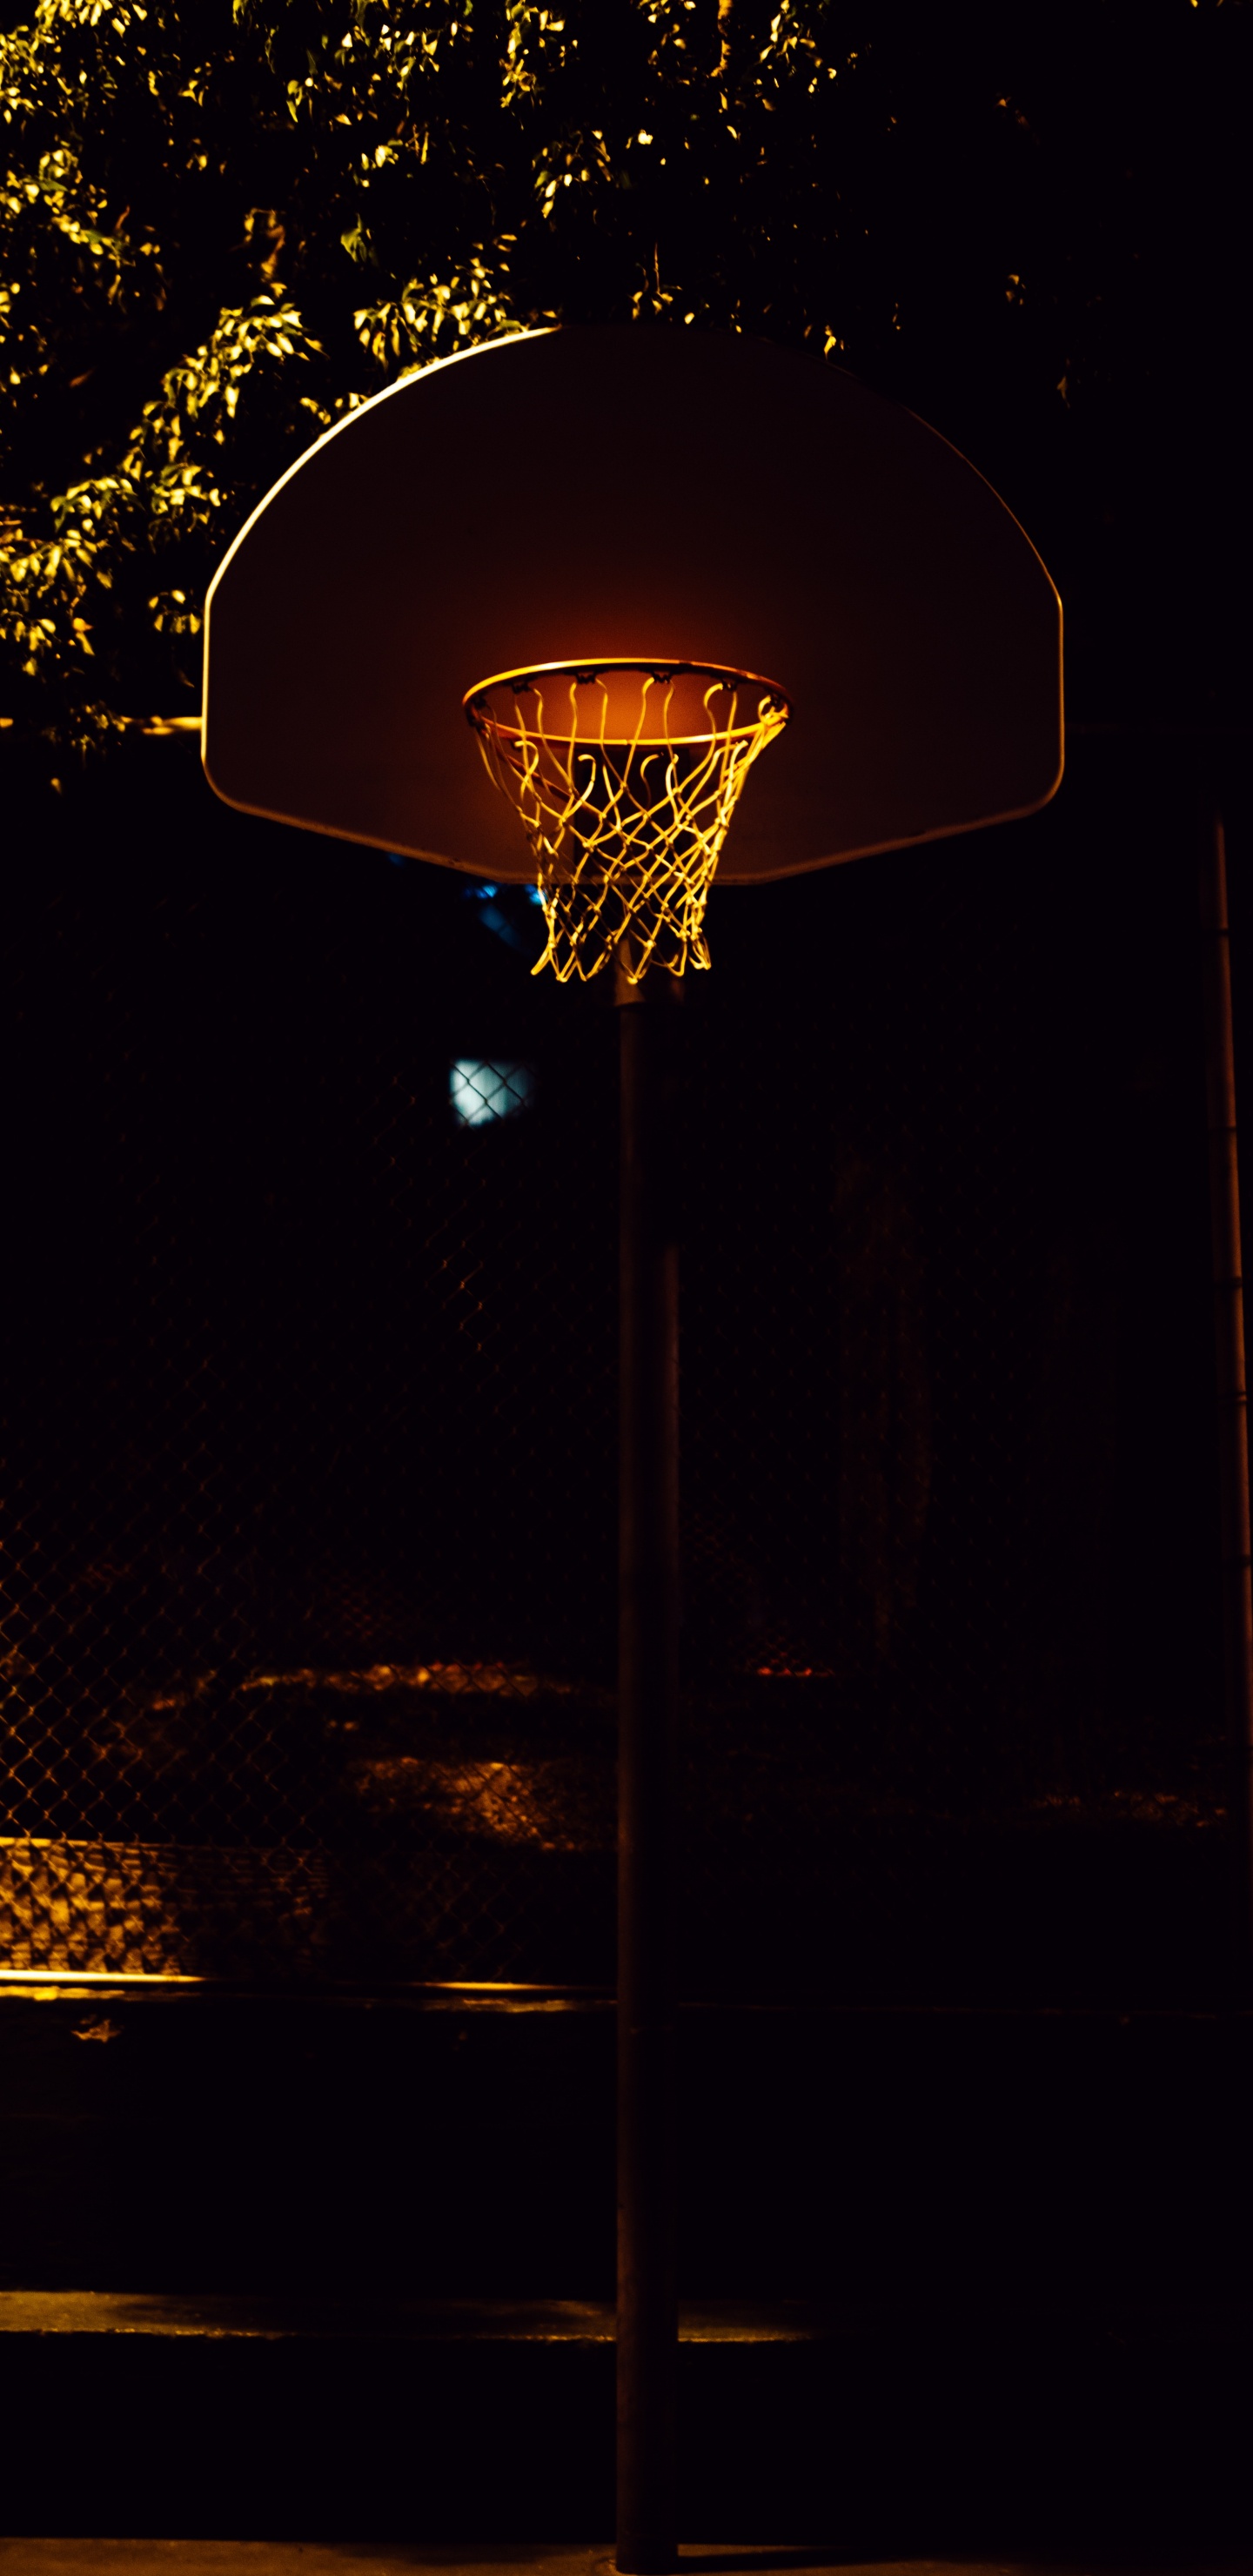 Basketballkorb Mit Nachts Eingeschaltetem Licht. Wallpaper in 1440x2960 Resolution